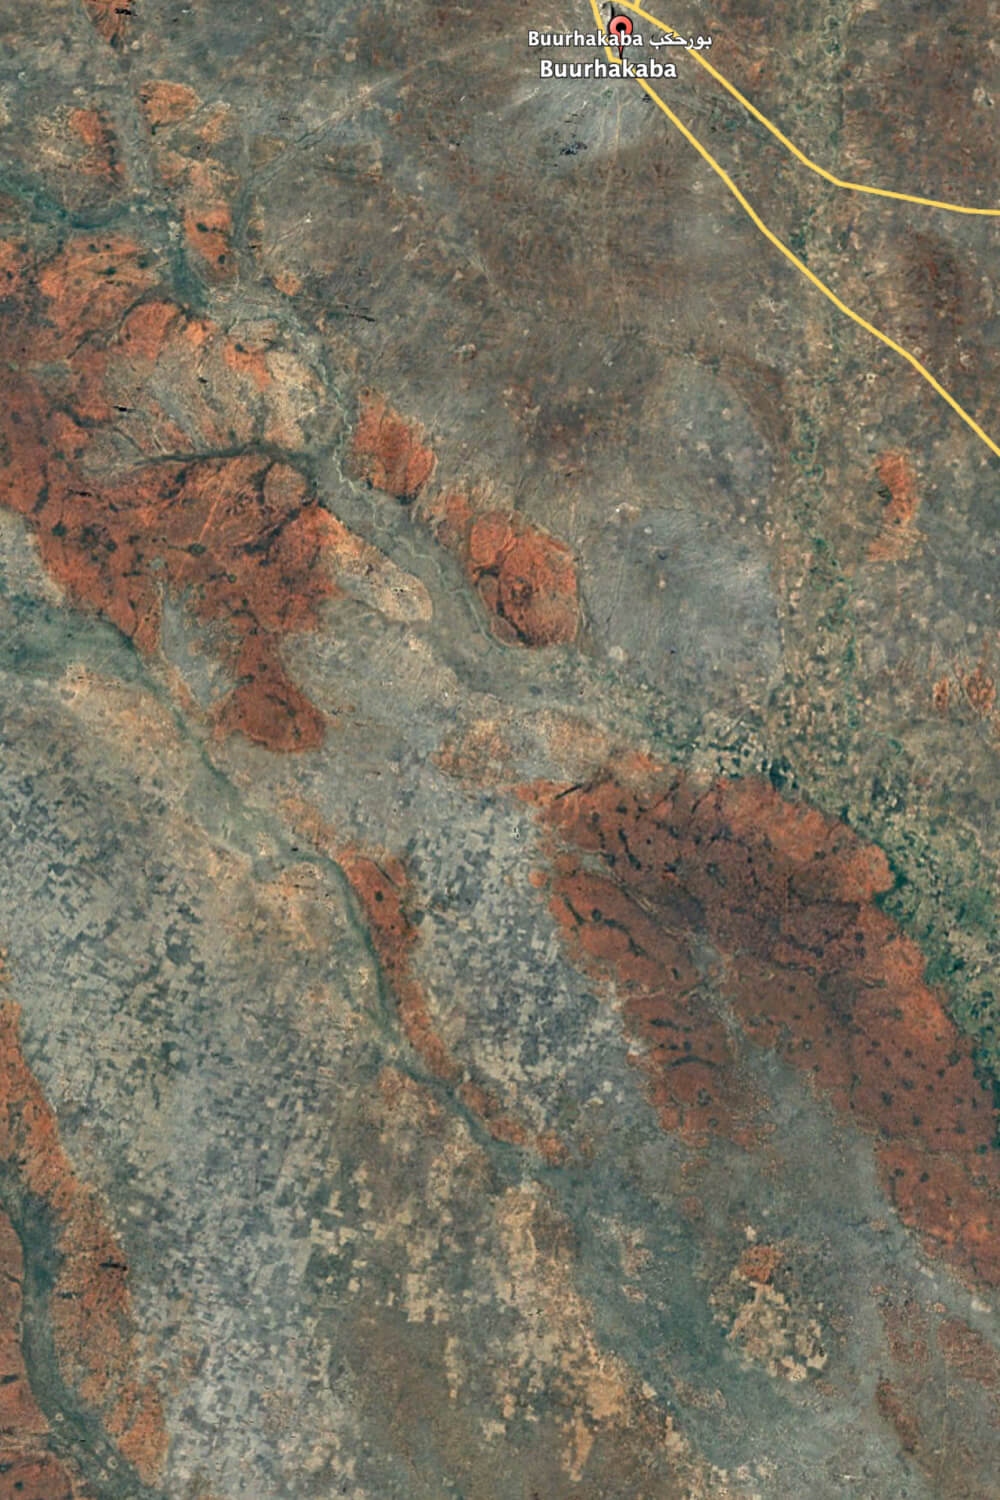 Satellitenbild Buurhakaba 2006